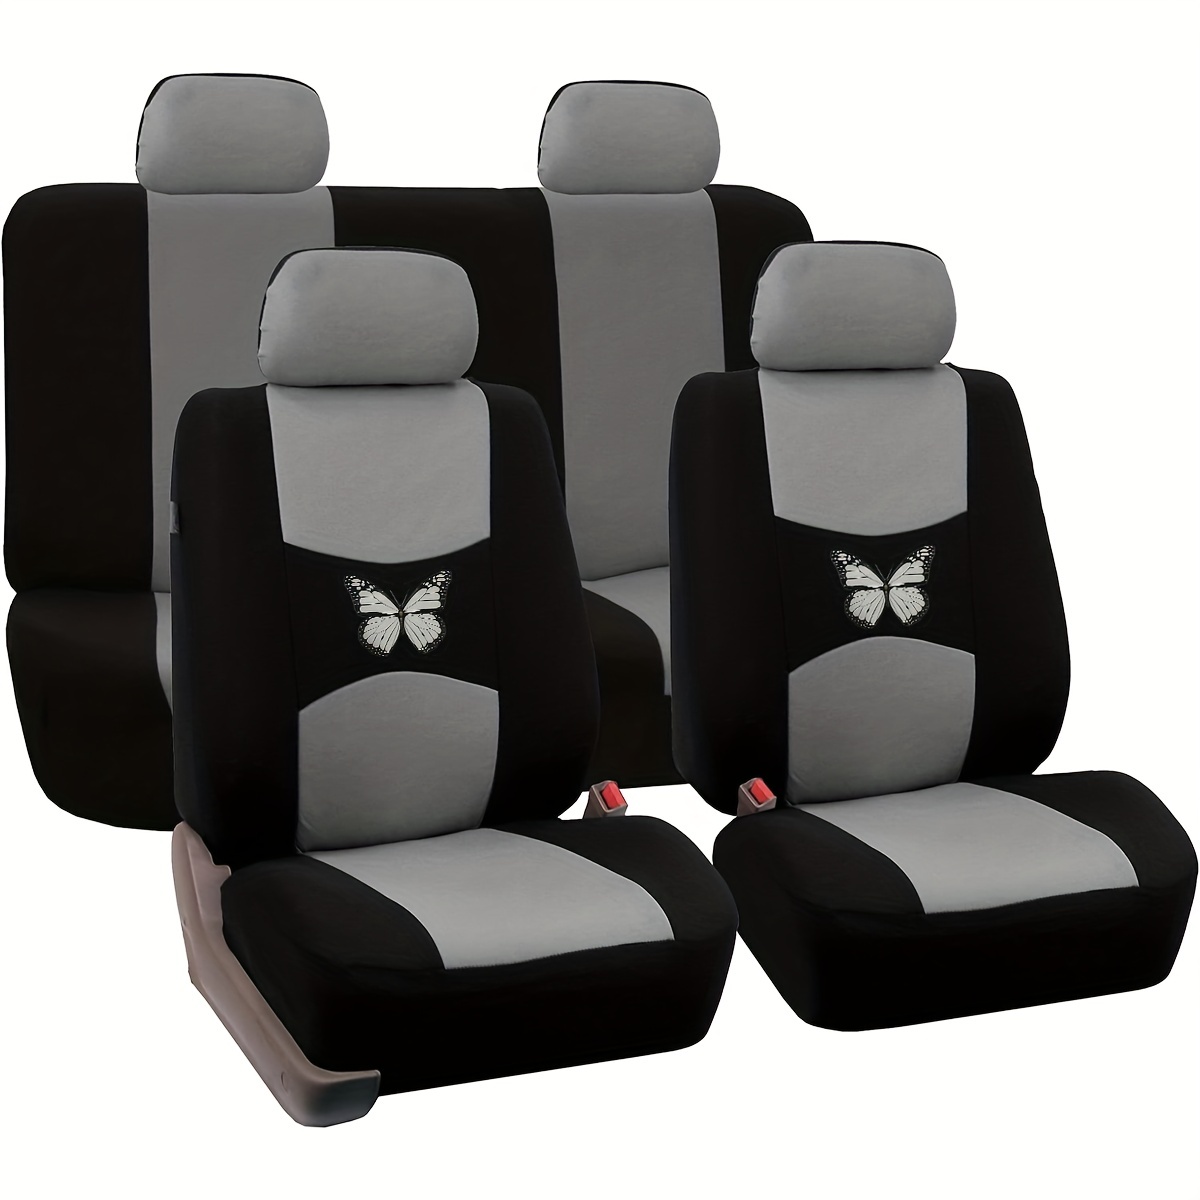 Beige Car Heated Seat Cover Cushion Warmer Fast Heating Pad N Warming Chair  A7Q0